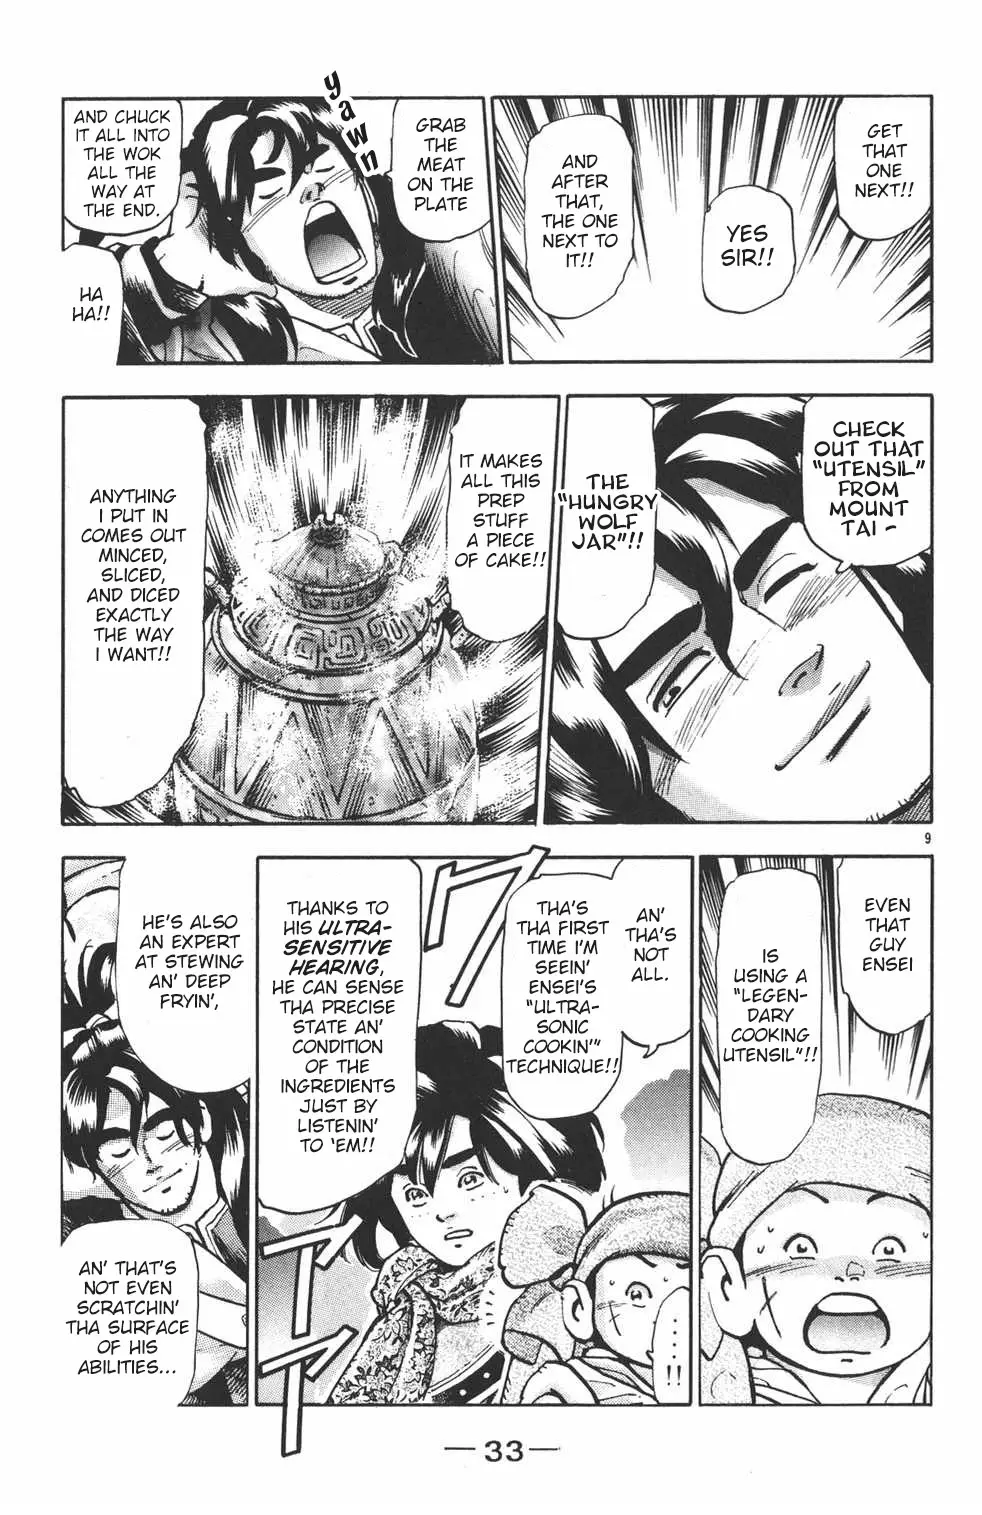 Shin Chuuka Ichiban! - 99 page 9-9500c3d1